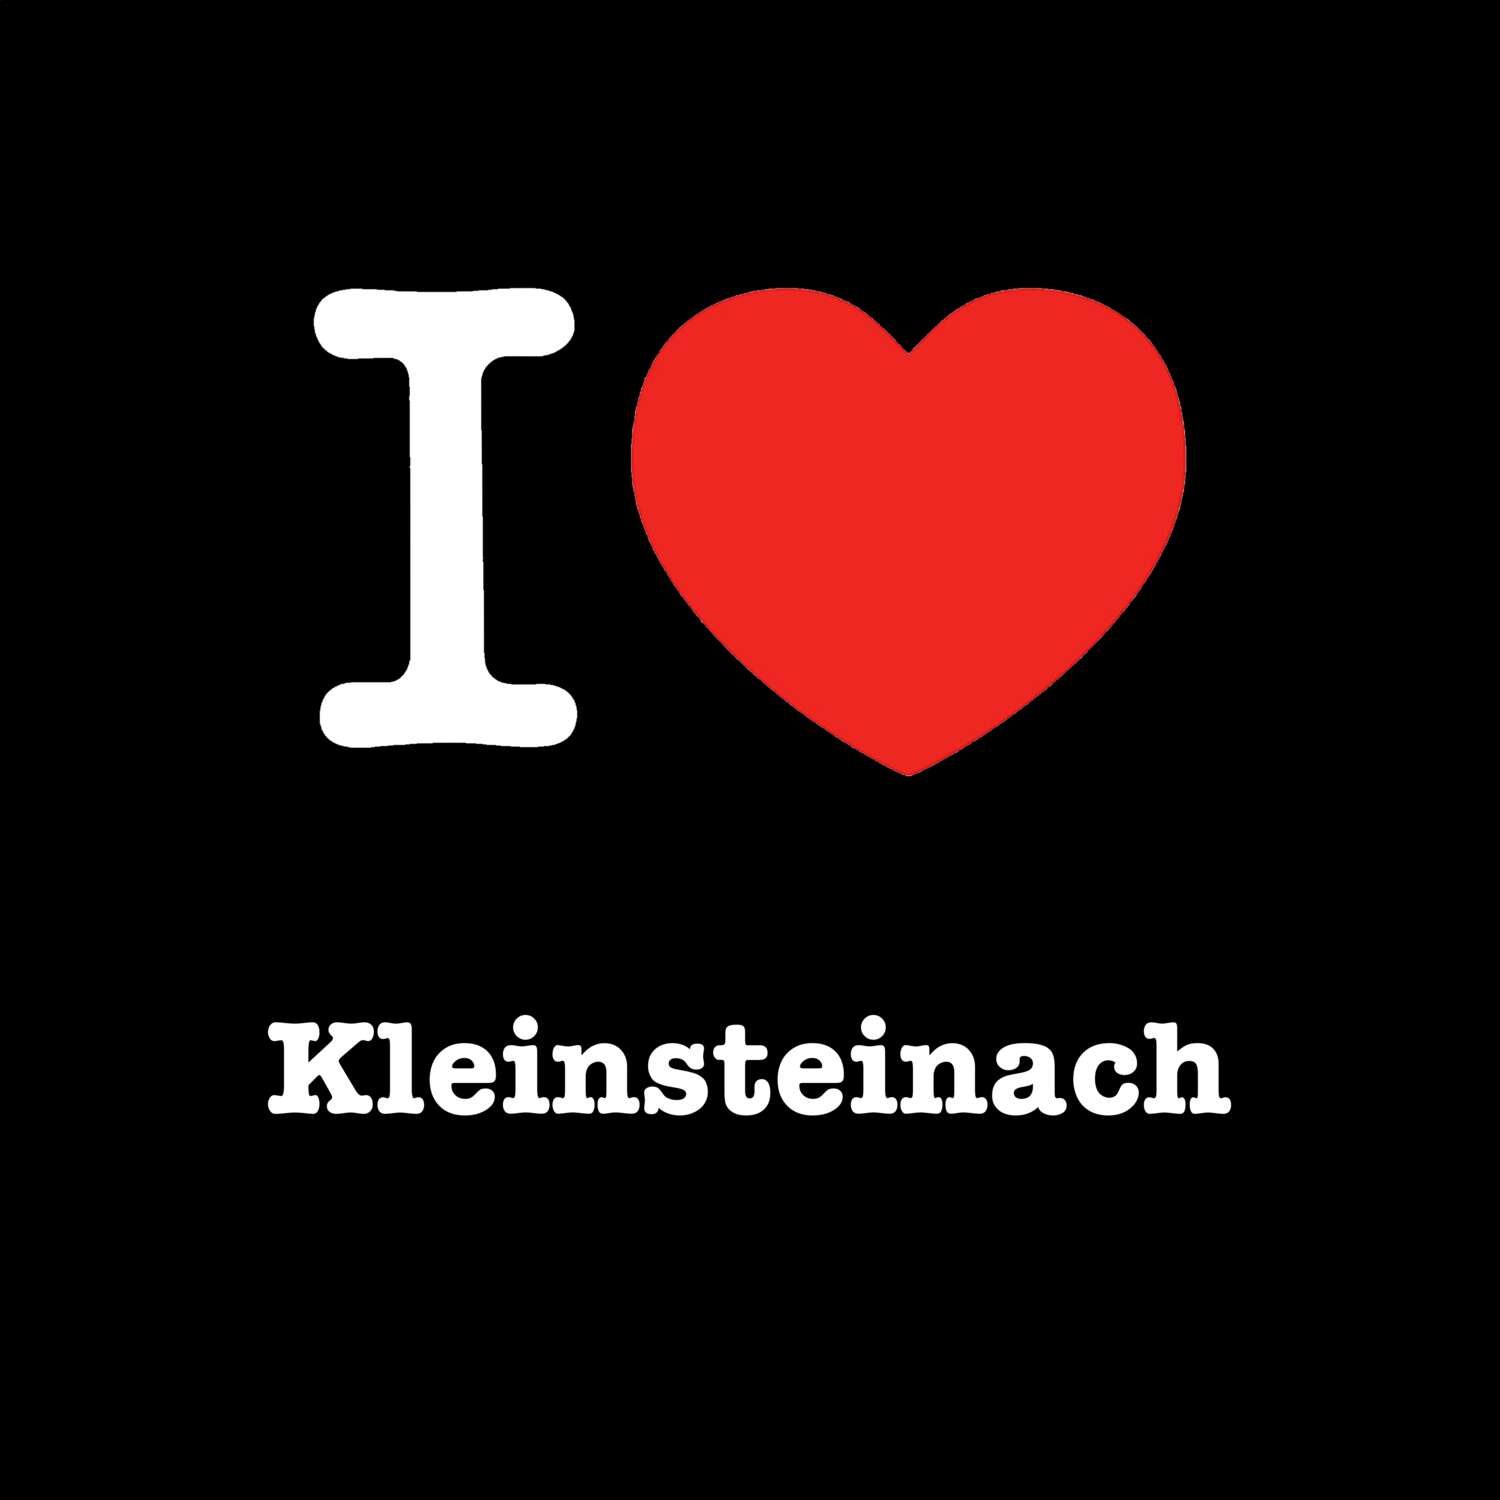 Kleinsteinach T-Shirt »I love«